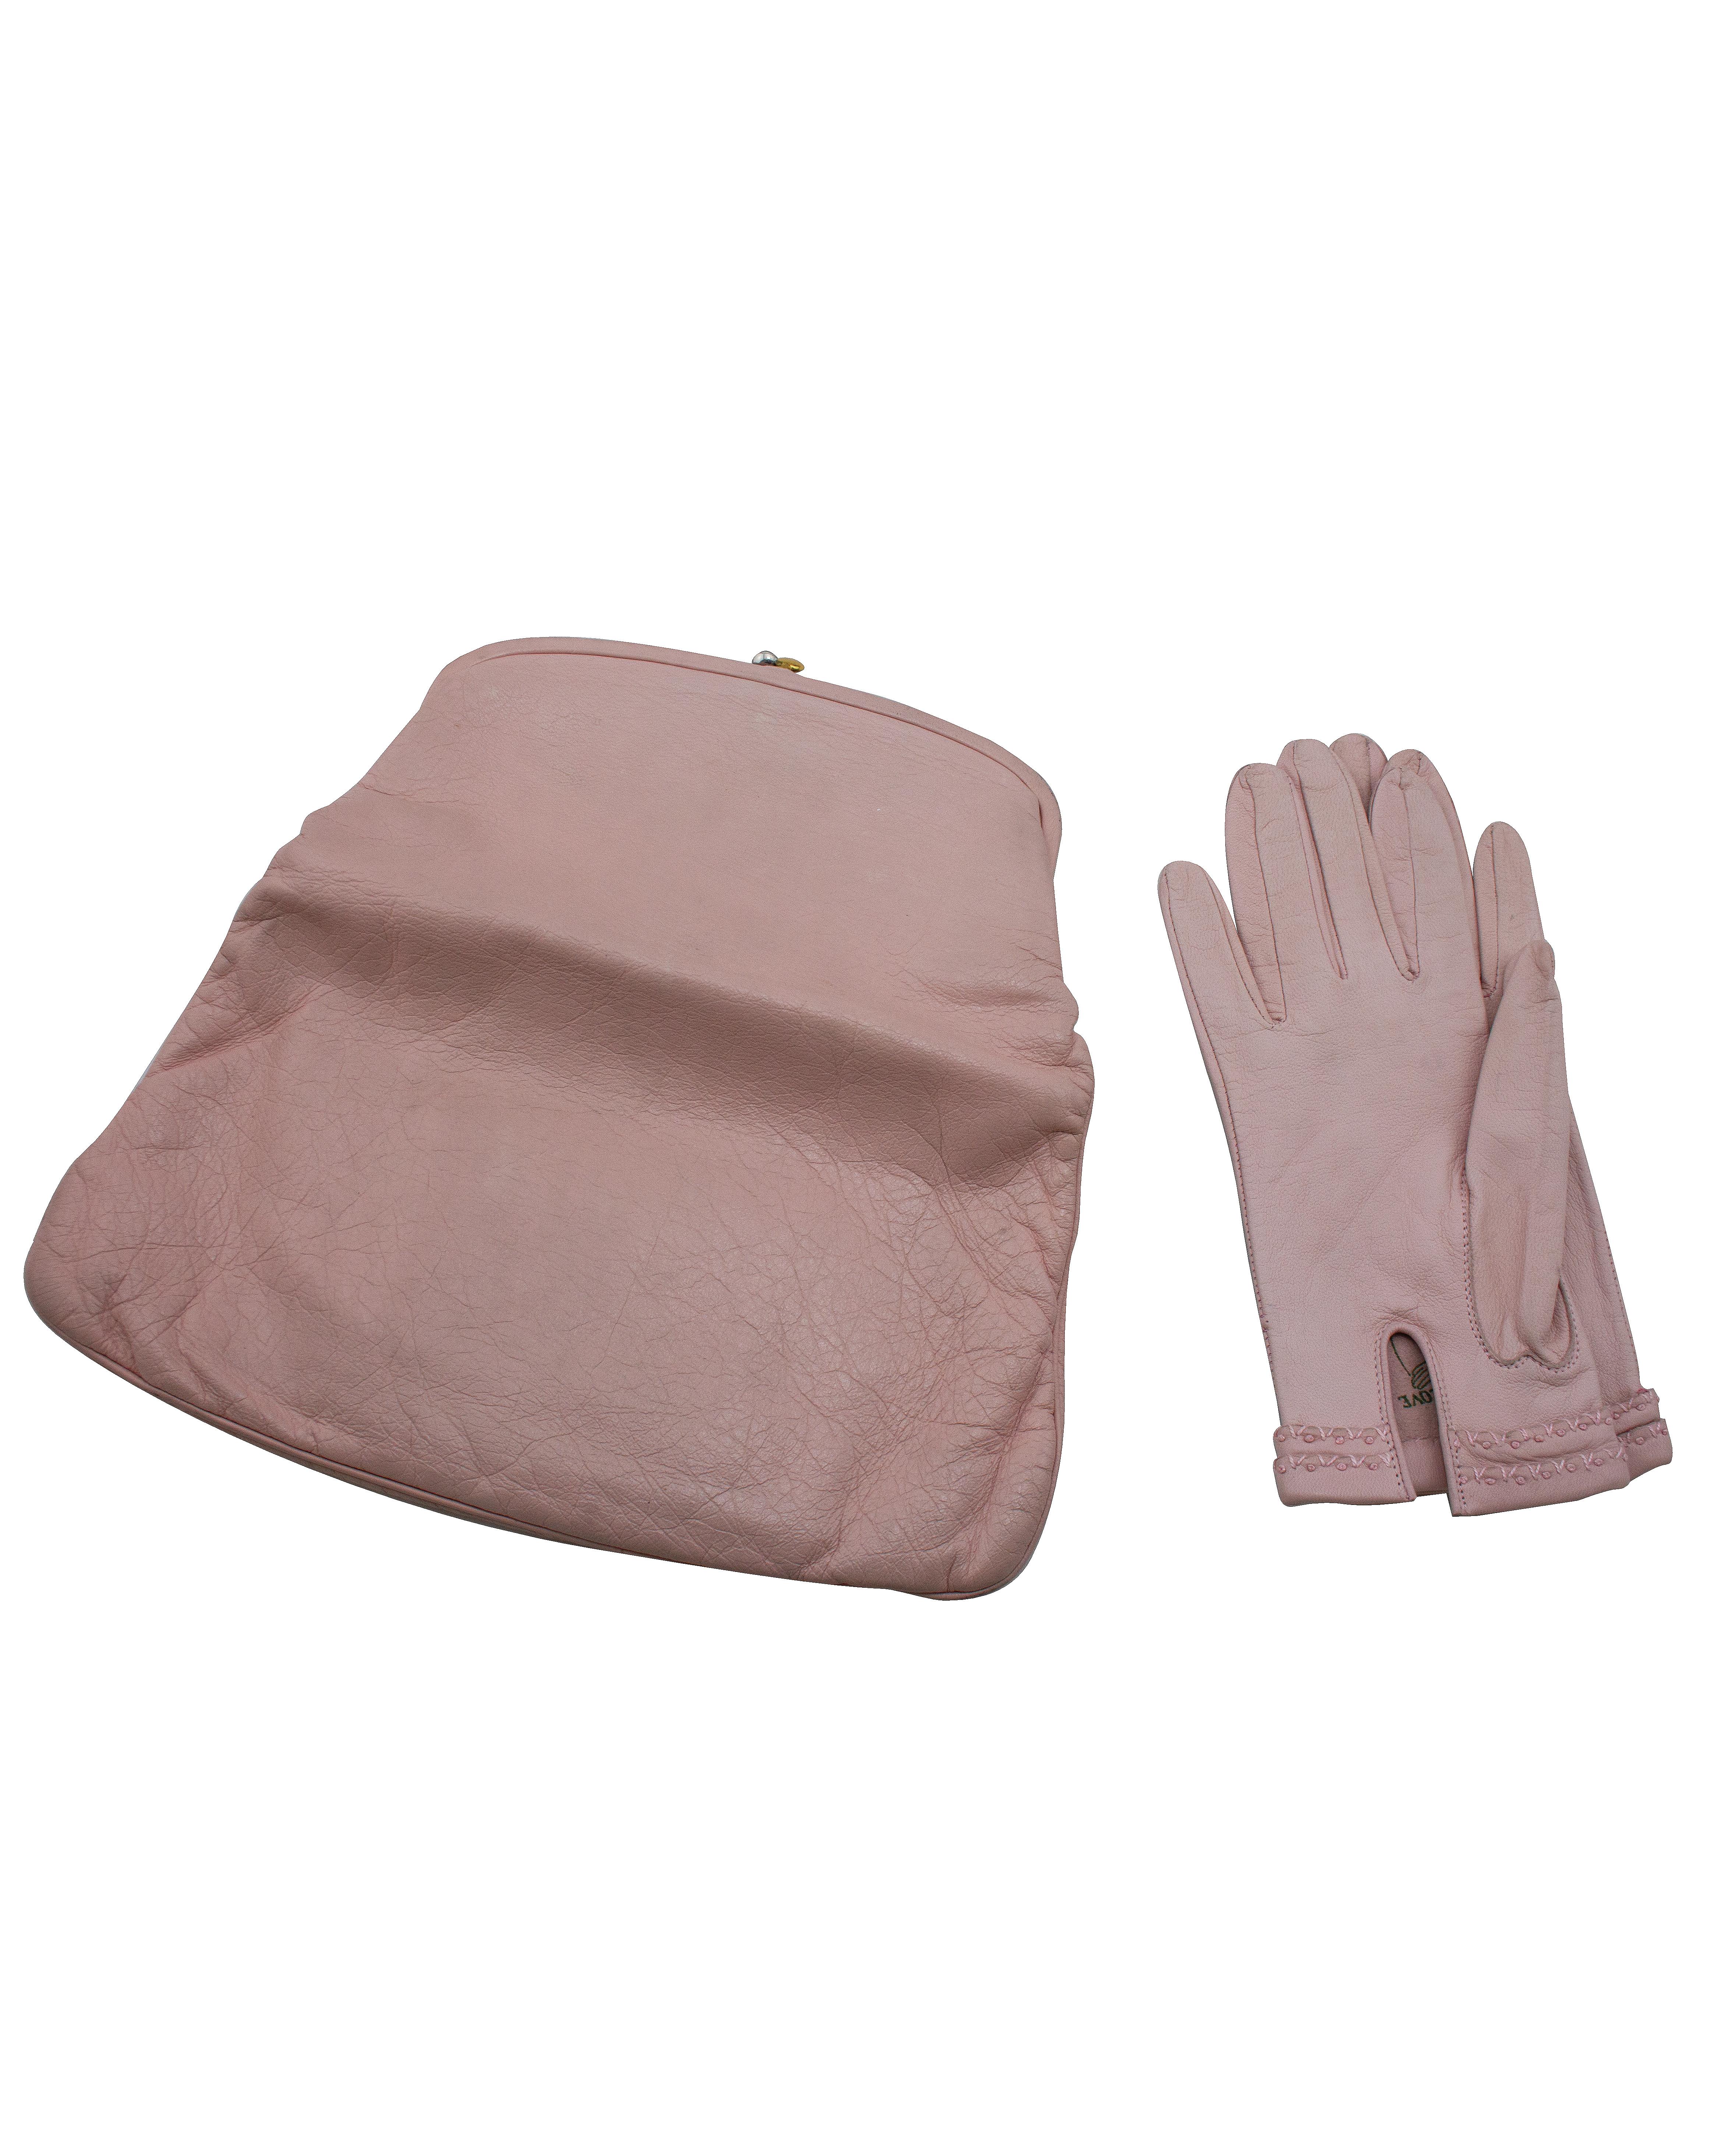 1950's pastellrosa Ziegenleder klassische Coblentz falten über Kupplung mit passenden rosa Lederhandschuhe. Dieser seltene Lederklassiker ist mit marineblauer Seide gefüttert und wird mit einem vergoldeten Metallschloss verschlossen. Das zusätzliche